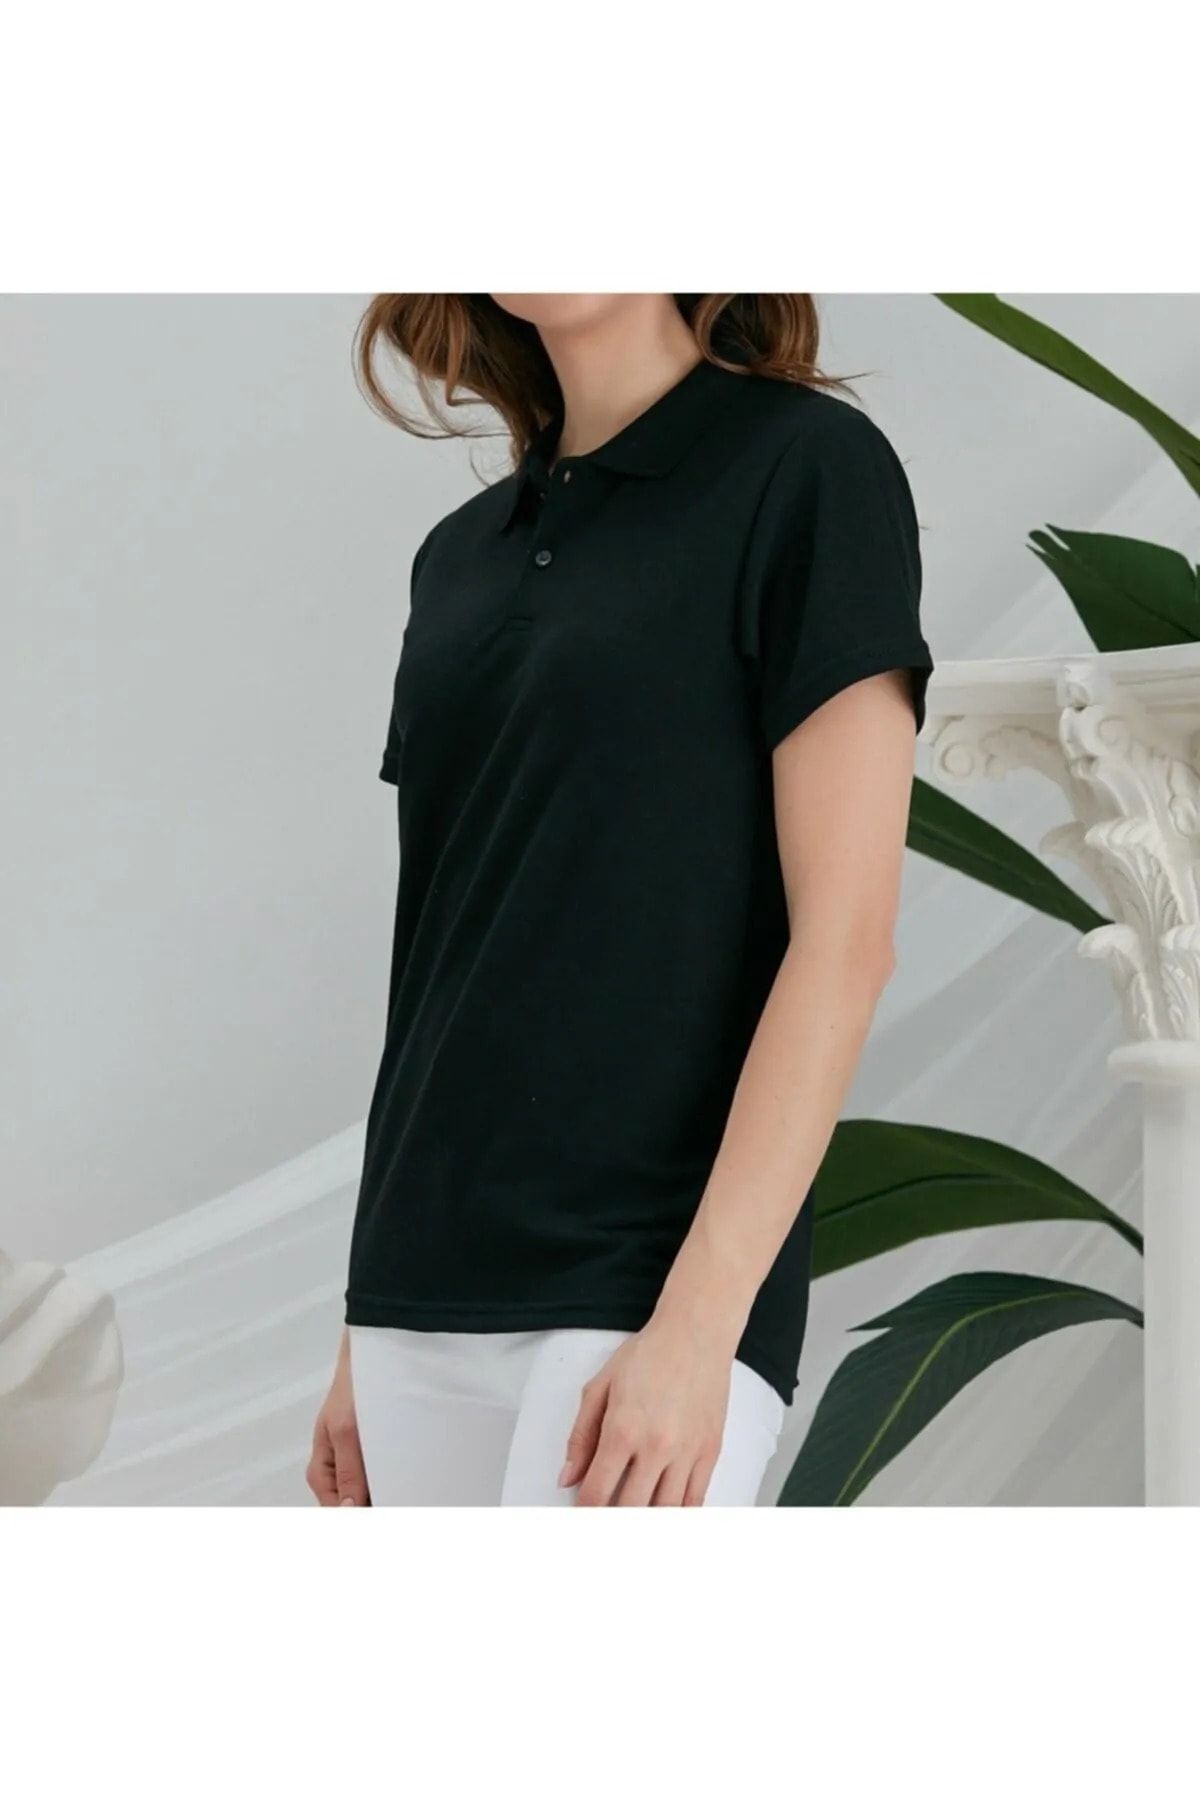 EKZMODA Siyah Düz Renk Unisex Kadın Polo Yaka T-shirt - Kadın T-shirt 3 Al 2 Ode